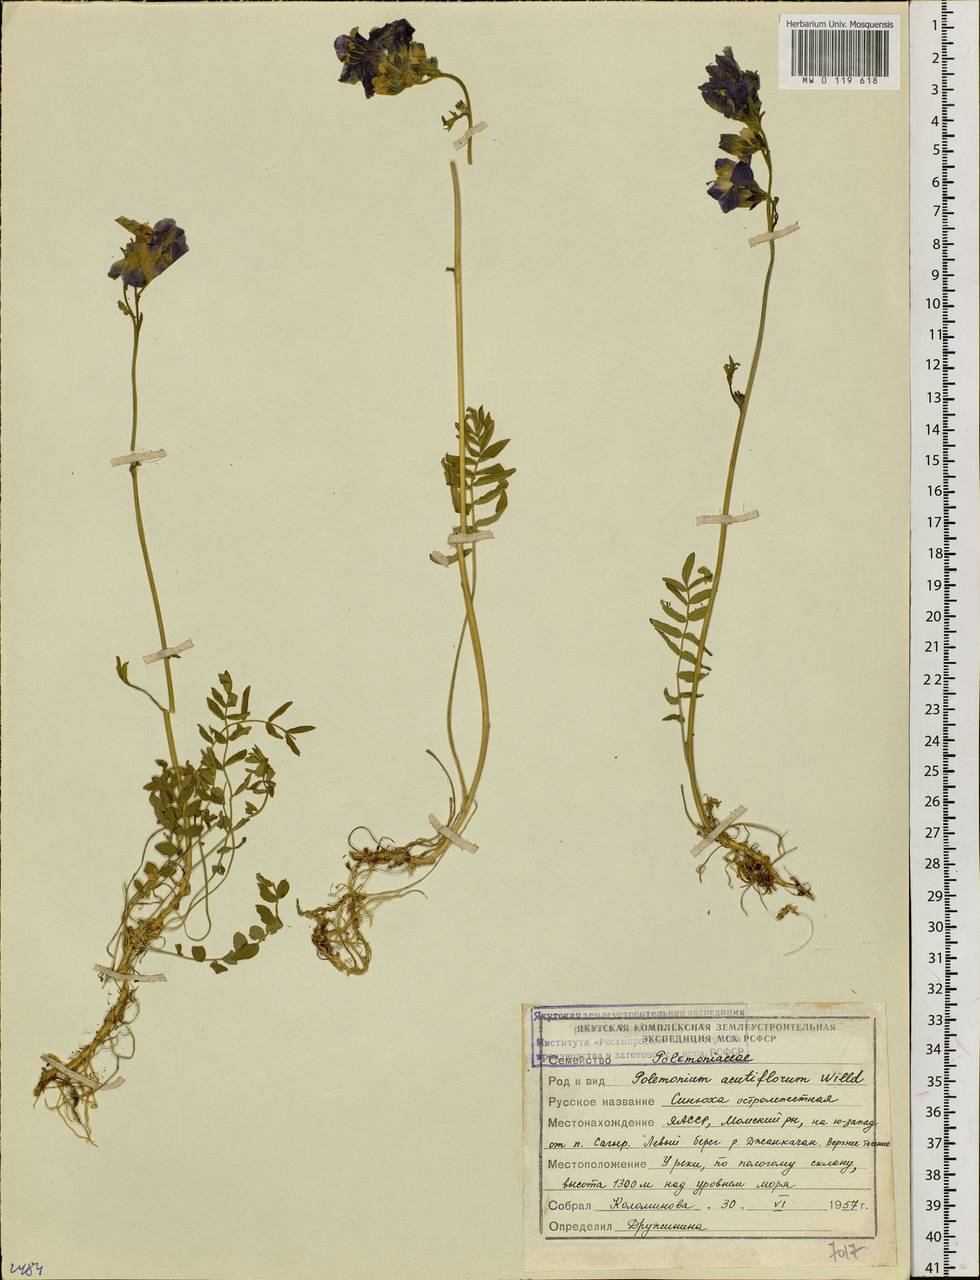 Polemonium villosum Rudolph ex Georgi, Siberia, Yakutia (S5) (Russia)